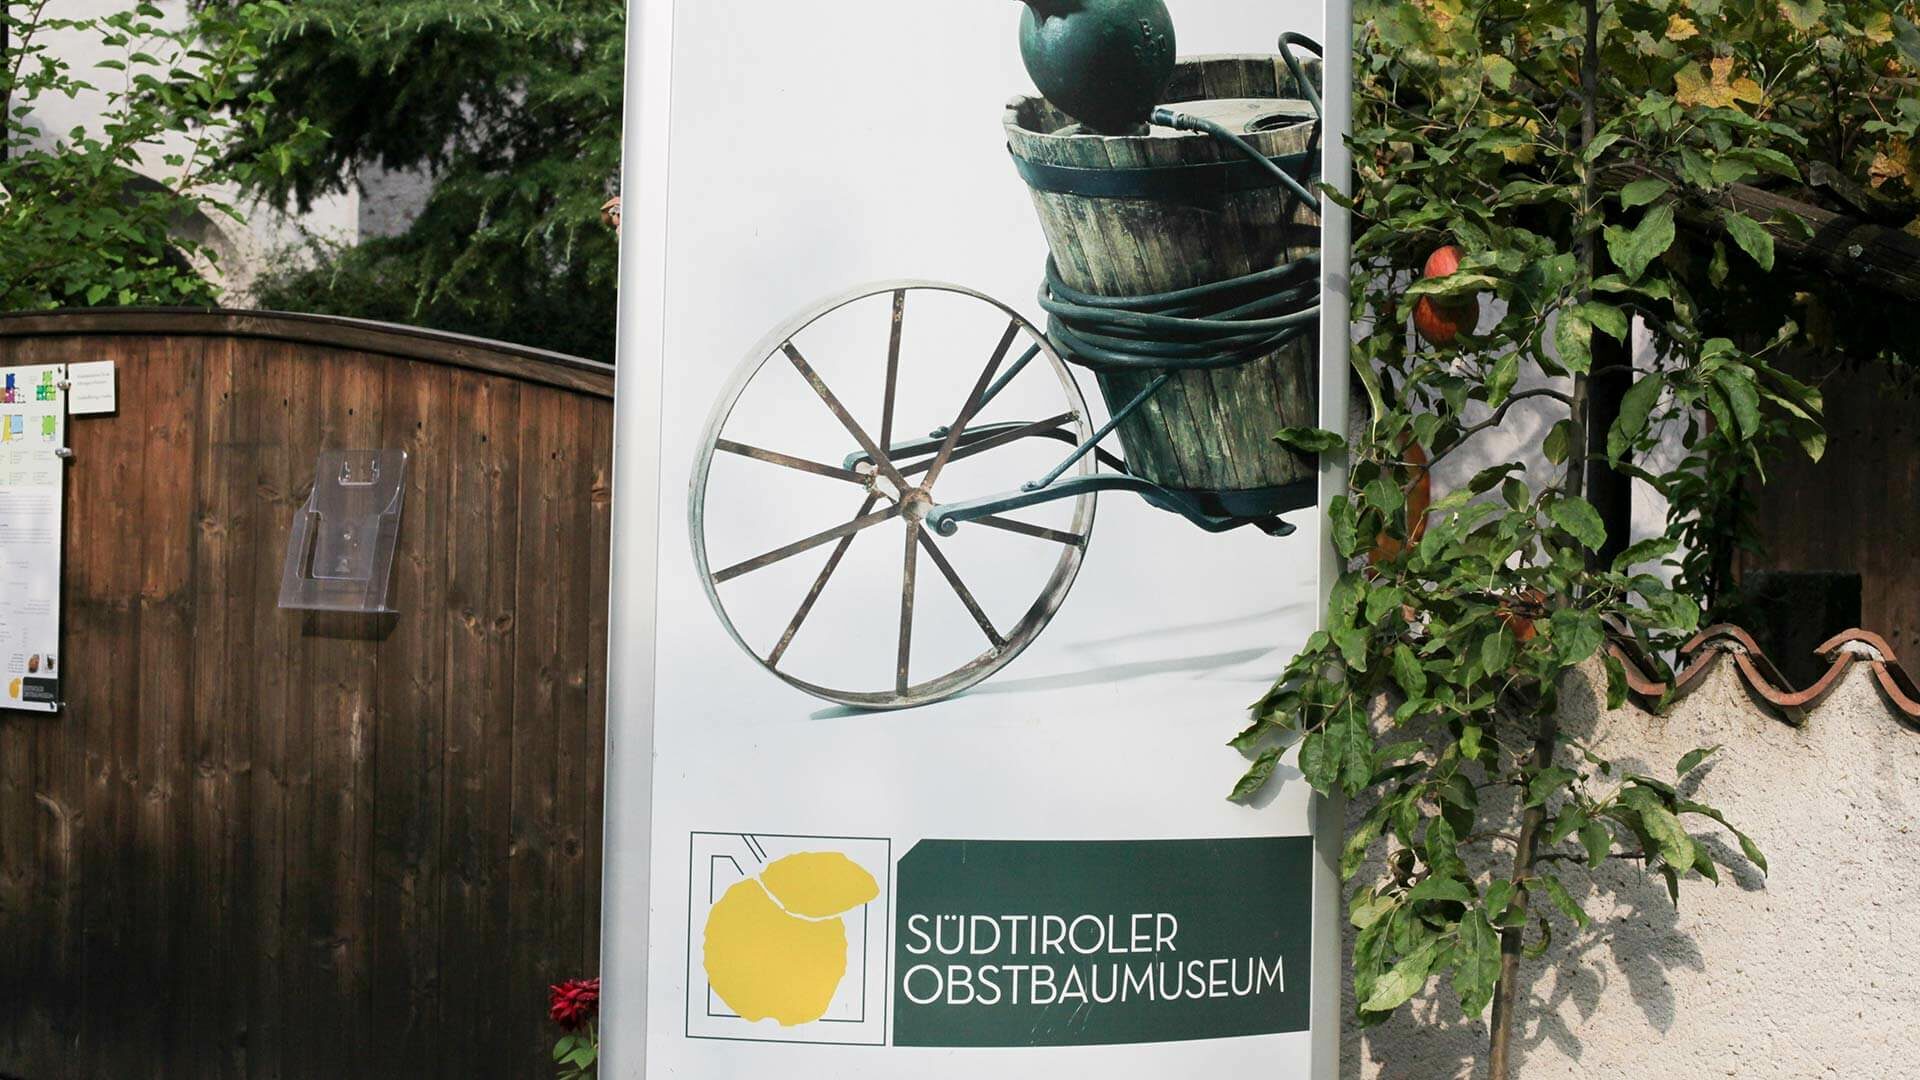 Südtiroler Obstbaumuseum in Lana